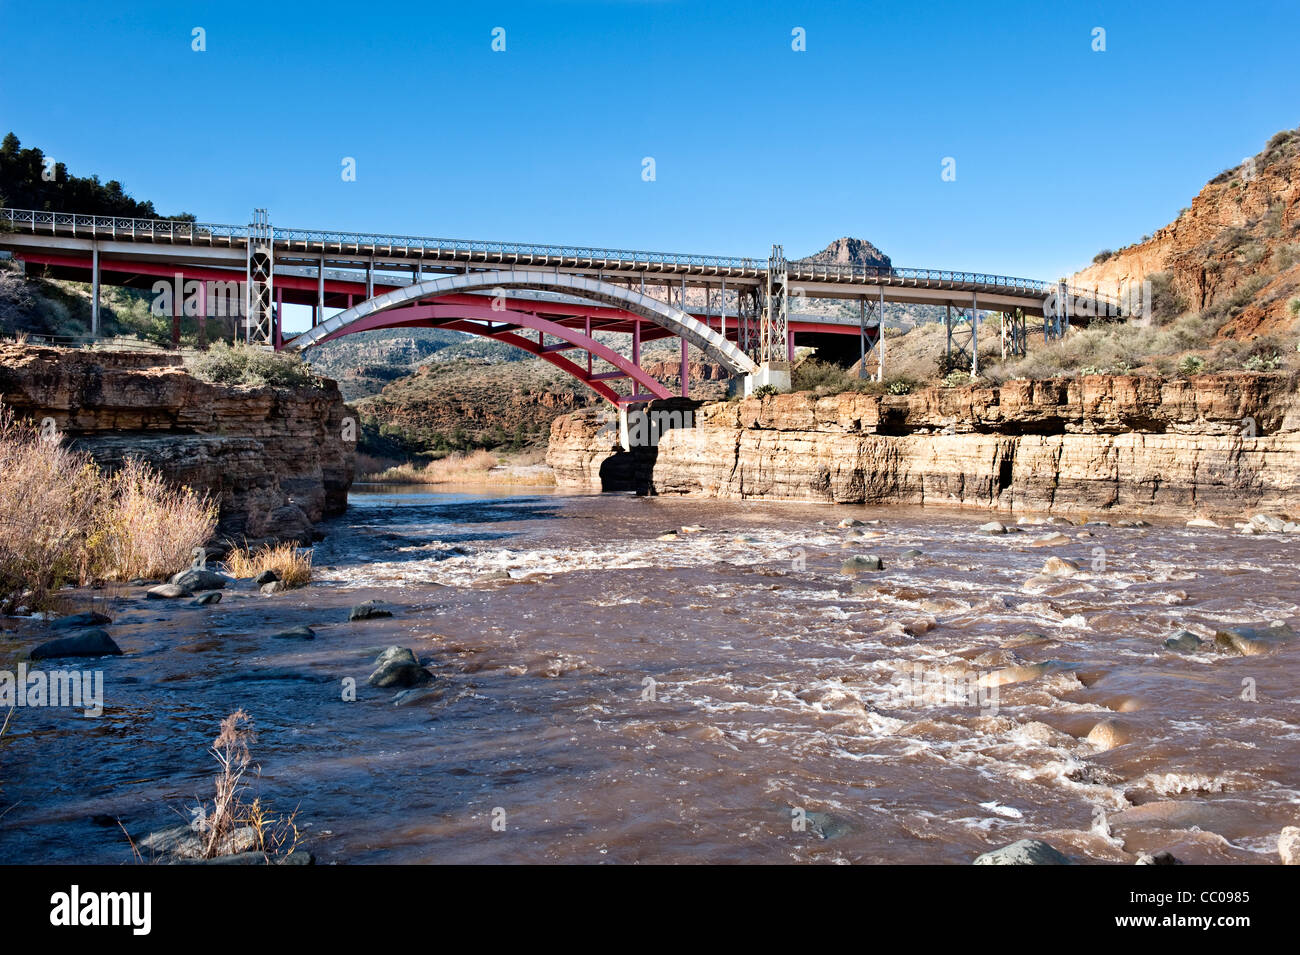 Un puente sobre un río salvaje en el desierto alto. Foto de stock